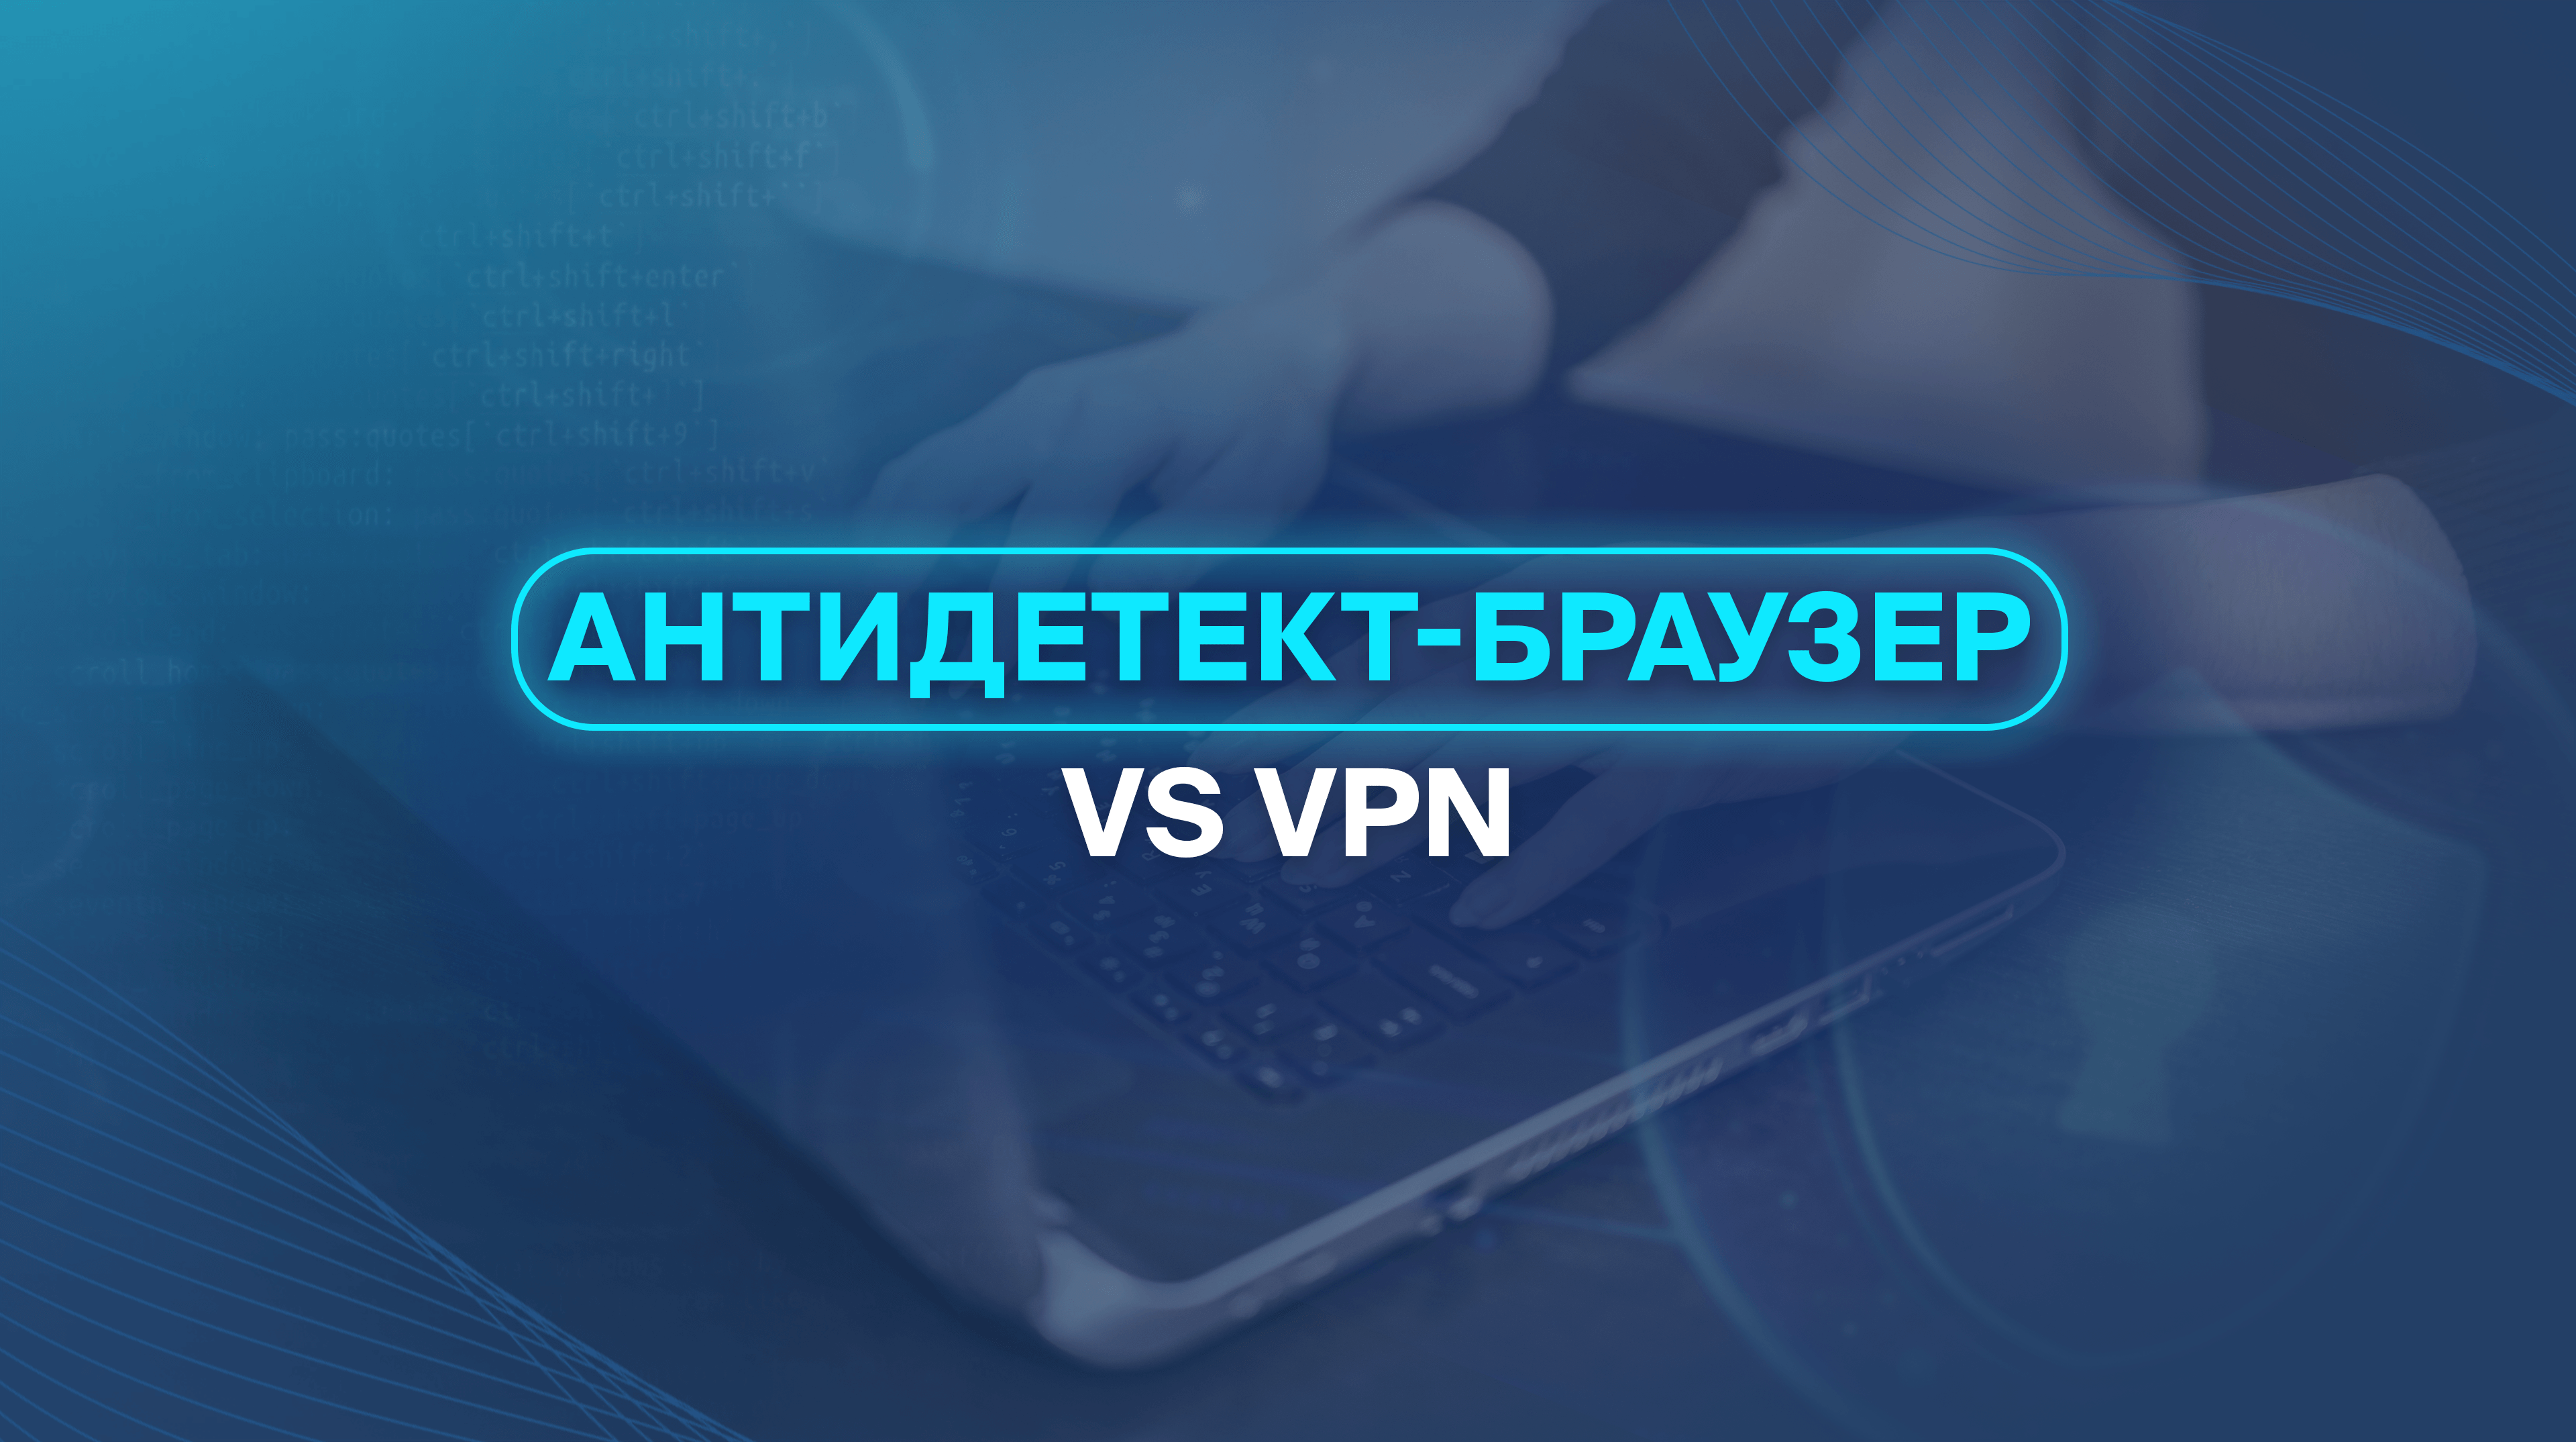 Антидетект-браузер vs VPN